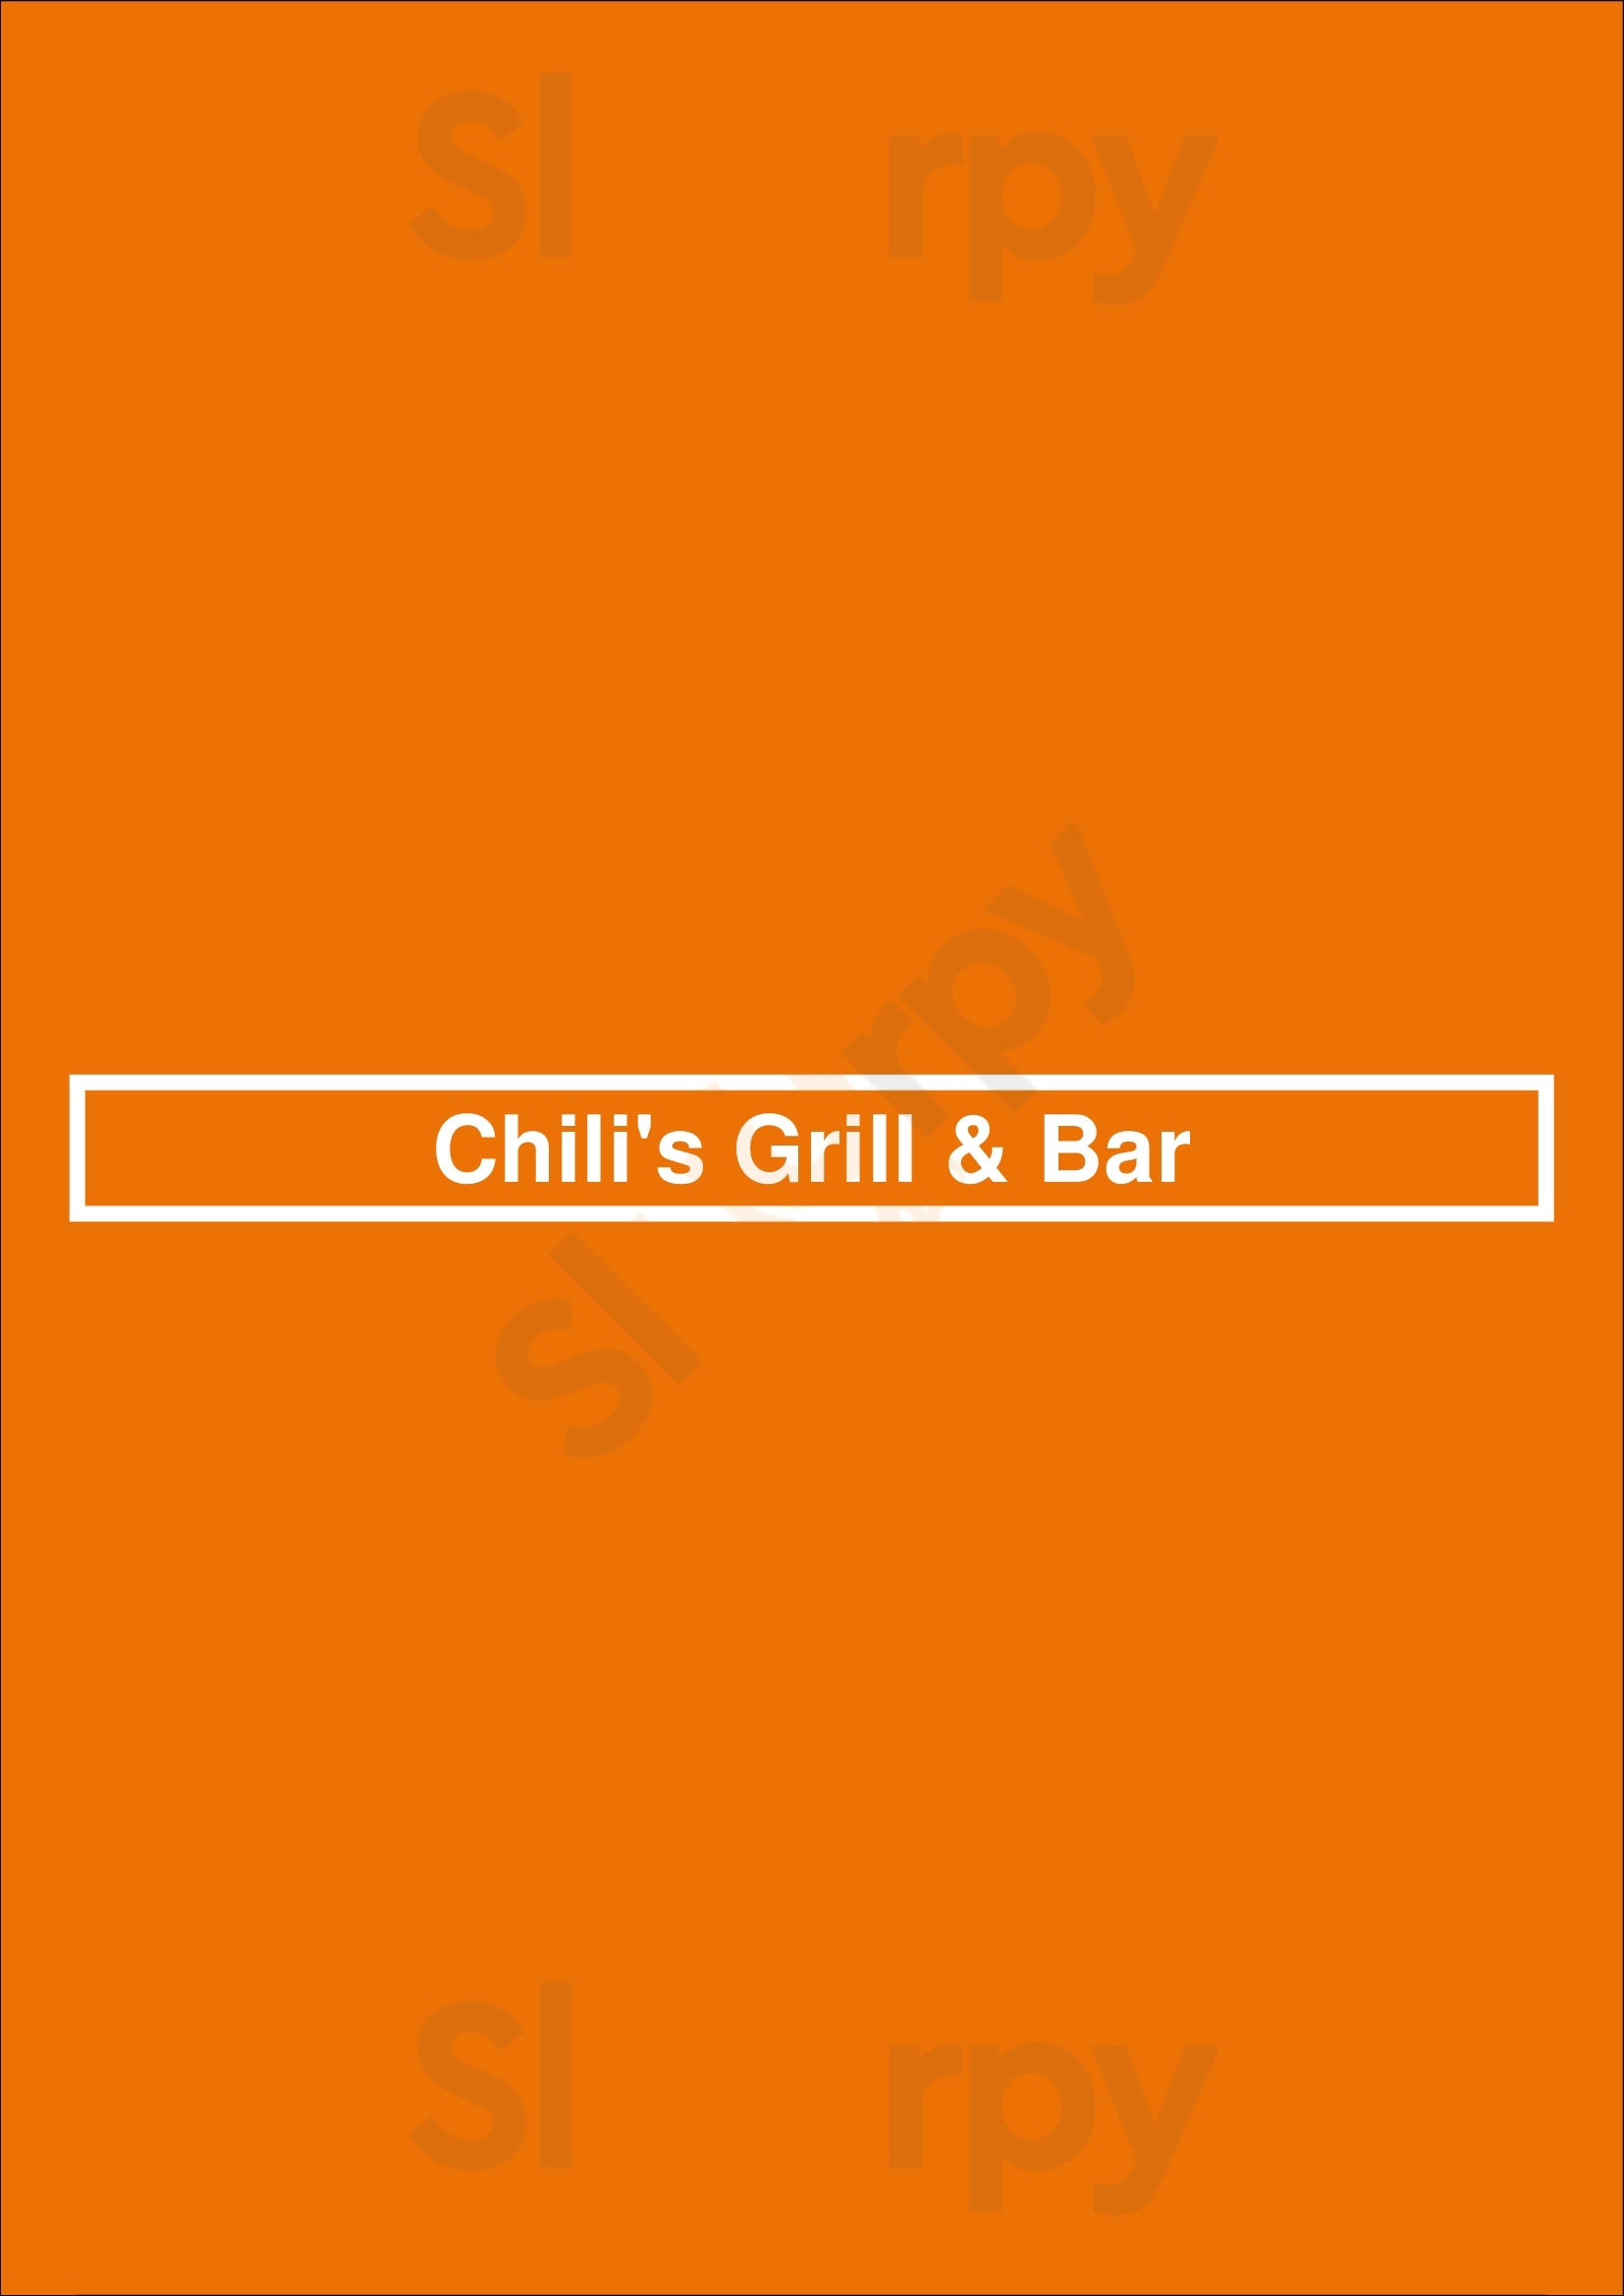 Chili's Grill & Bar Austin Menu - 1